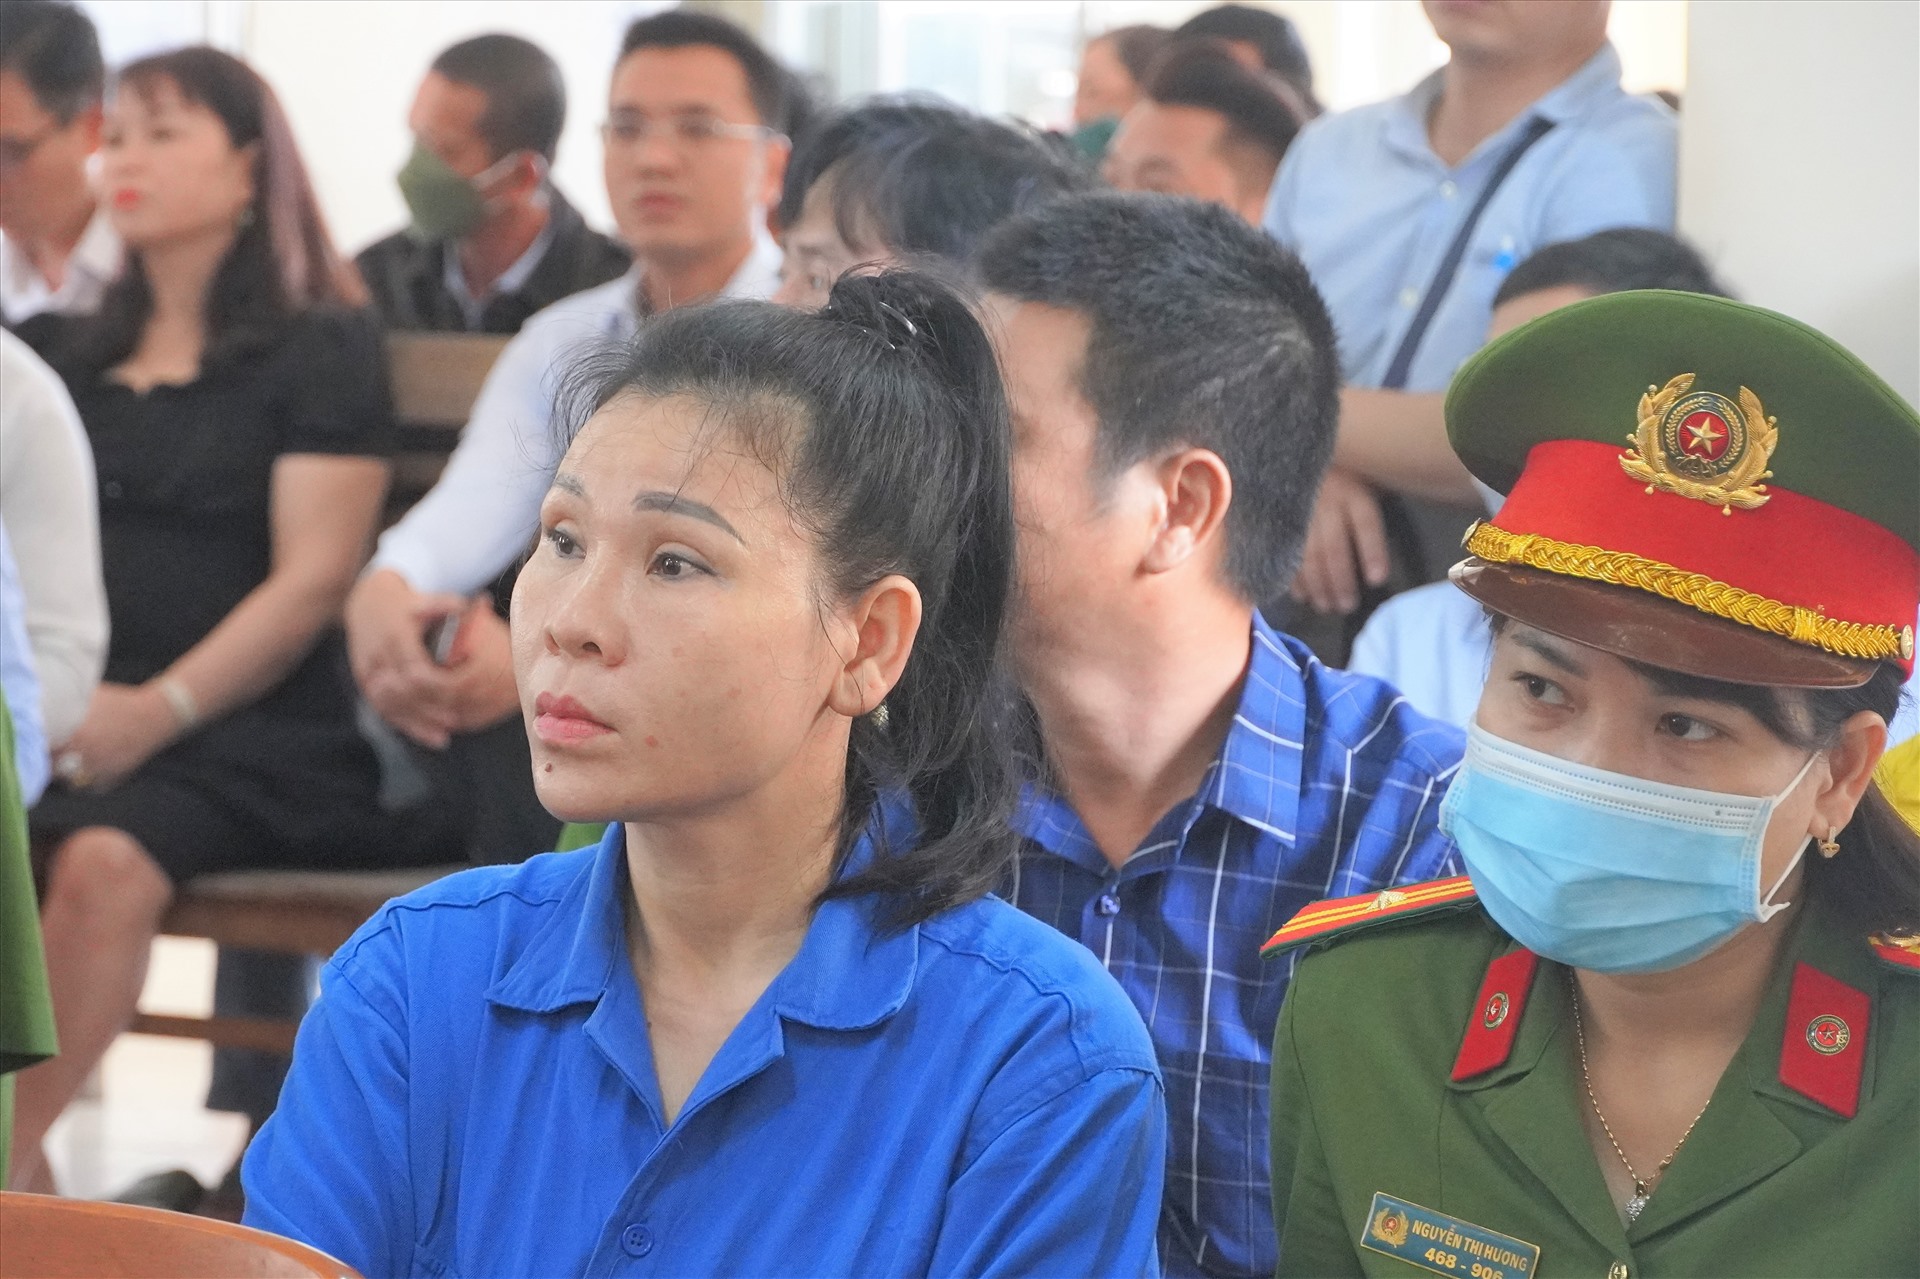 Bà Lâm Thị Thu Trà cũng được đưa đến tham dự phiên tòa ở vai trò người có quyền và nghĩa vụ liên qua. Ảnh: Thành An